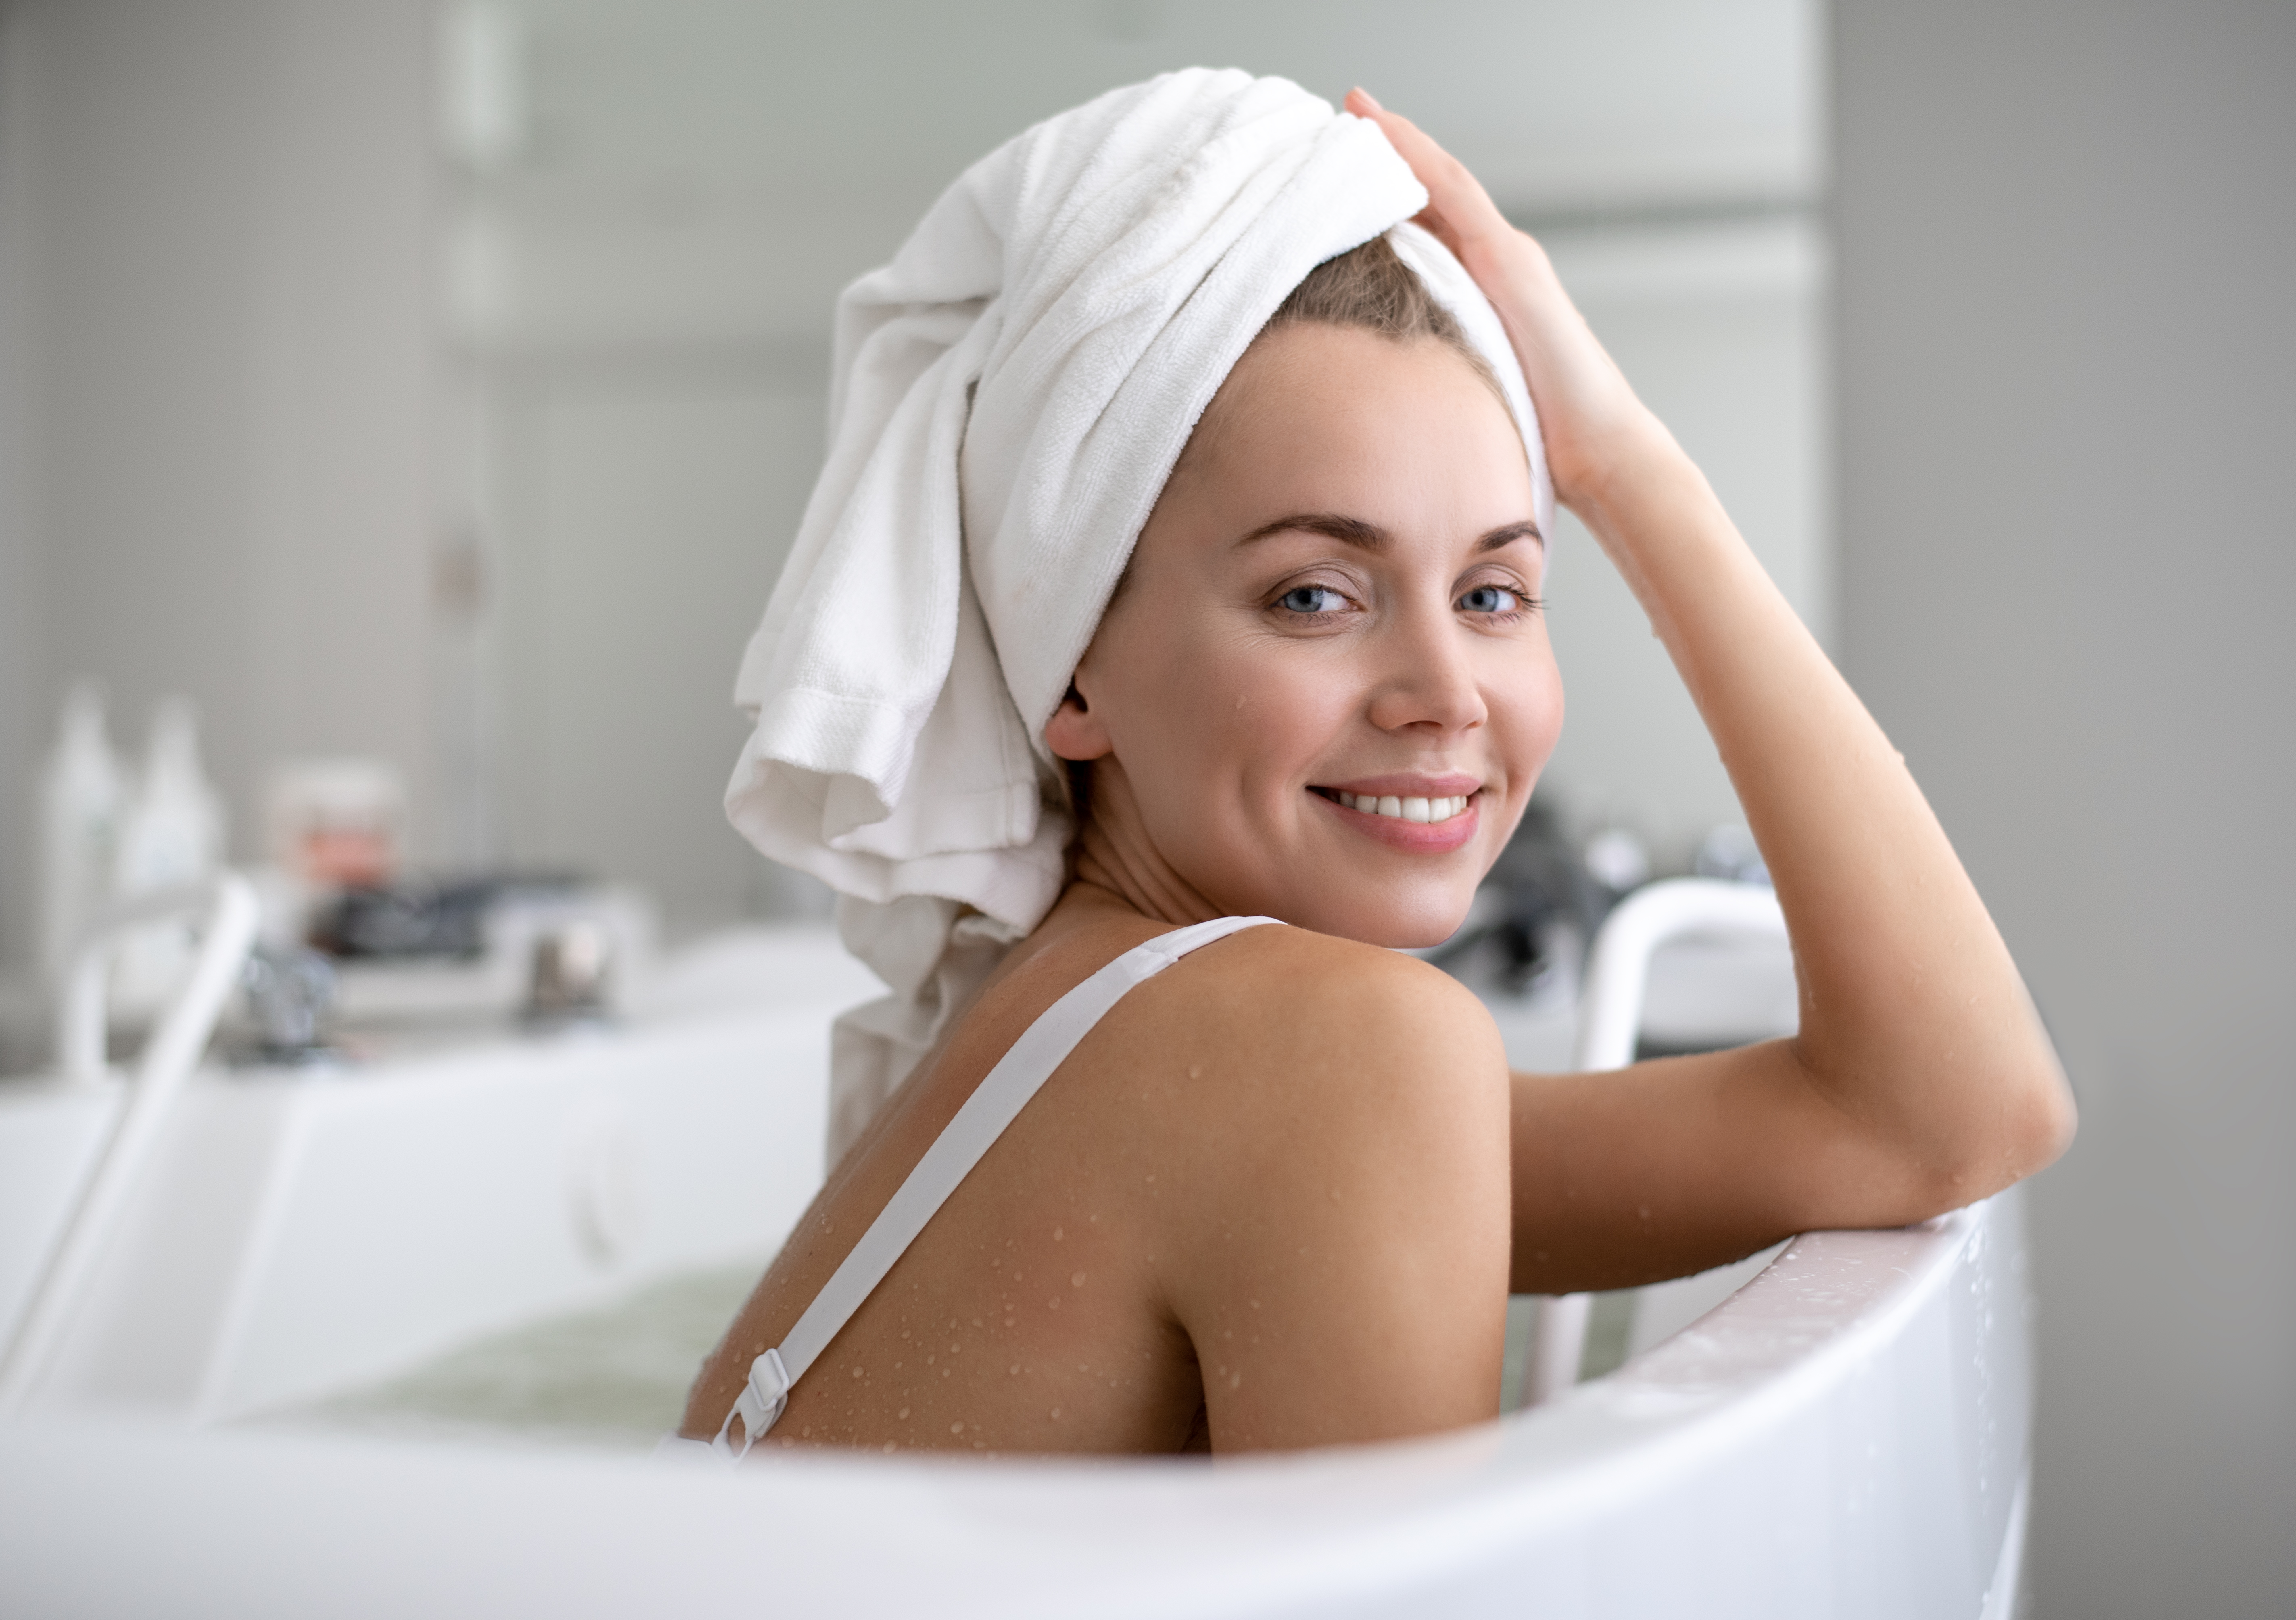 Te is kádfürdőzés közben mosod a hajad? Elmondjuk, miért ne tedd -  kiskegyed.hu